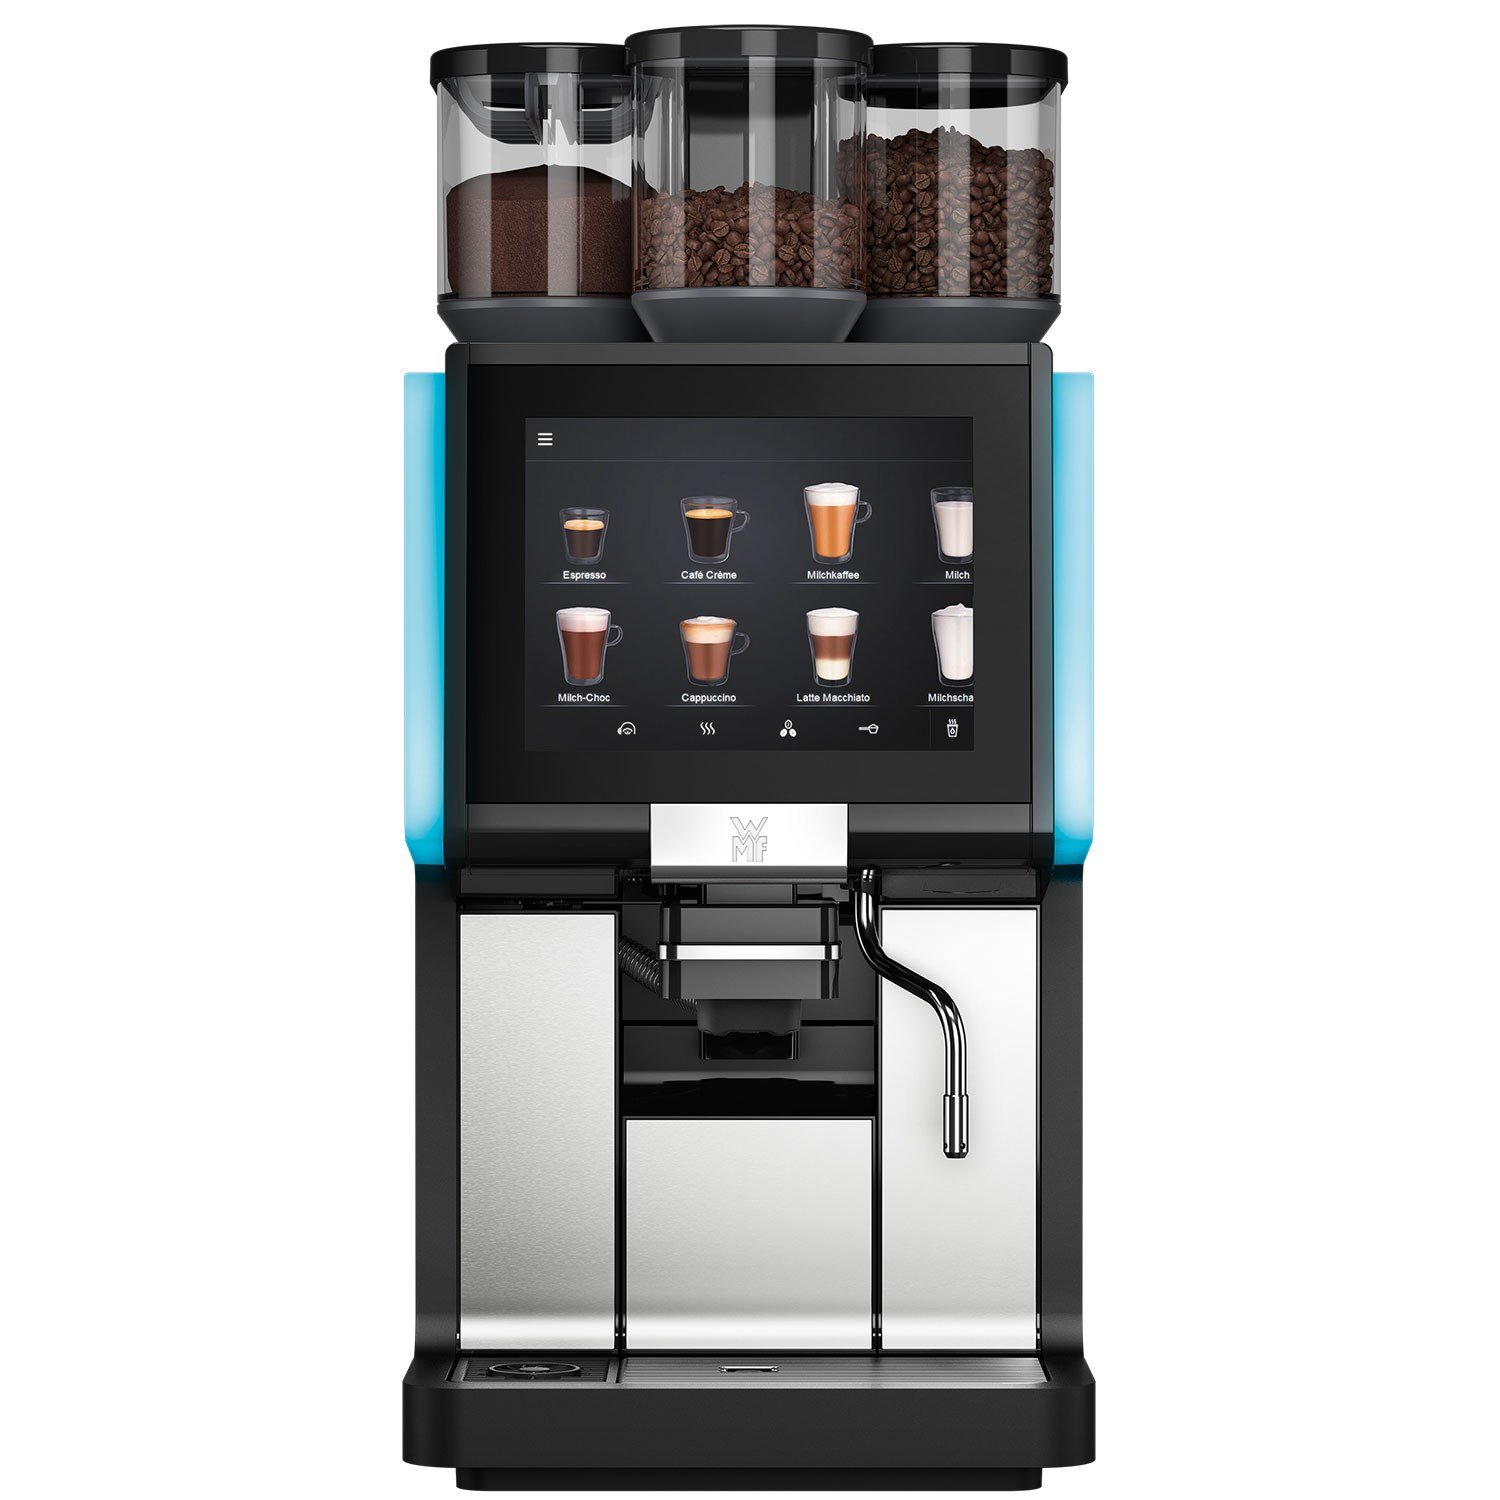 WMF 1500 S Plus Full Otomatik Kahve Makinesi | iles.com.tr